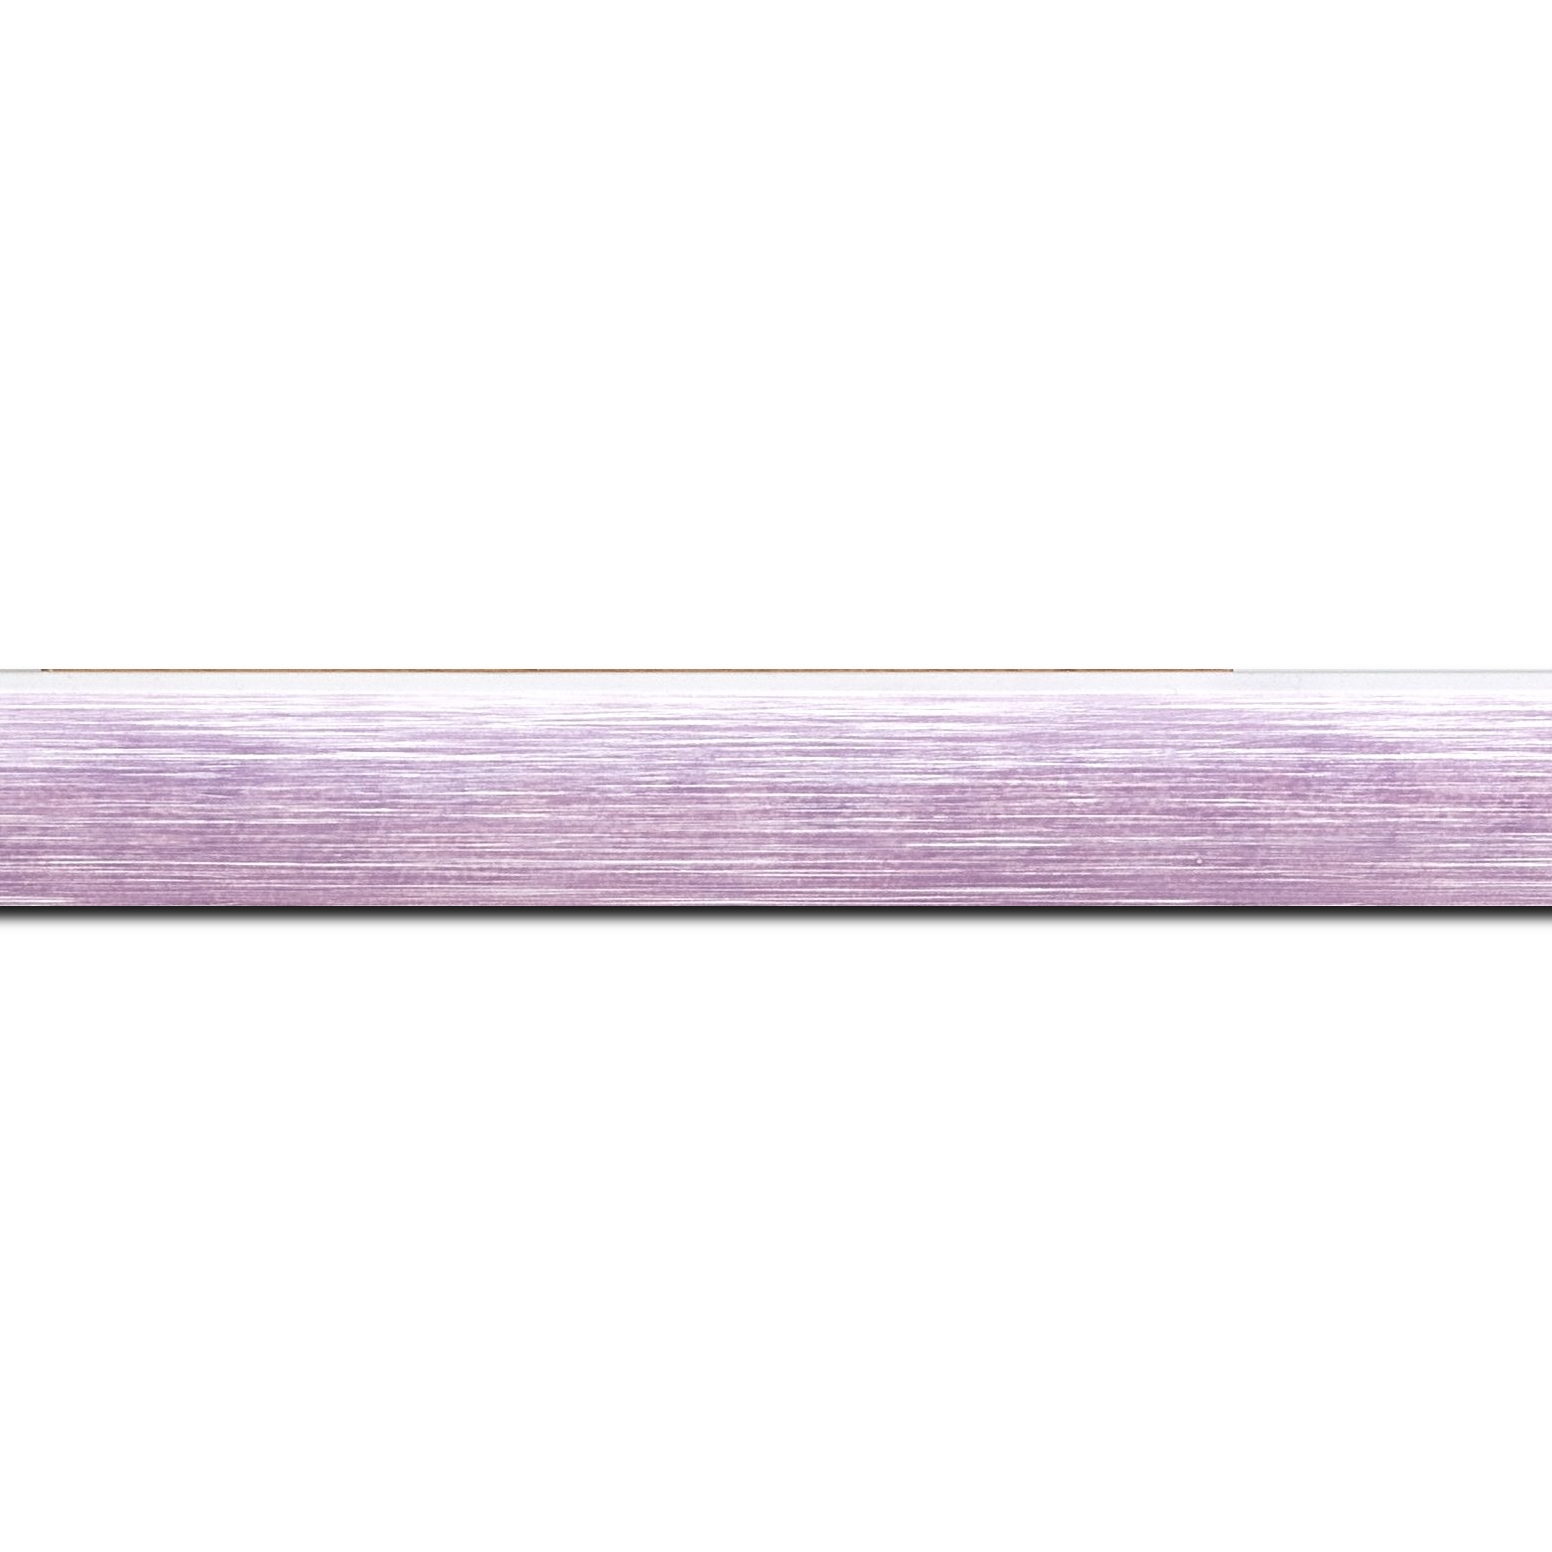 Baguette longueur 1.40m bois profil arrondi en pente plongeant largeur 2.4cm couleur lavande tendre, arête et chant extérieur du cadre blanc